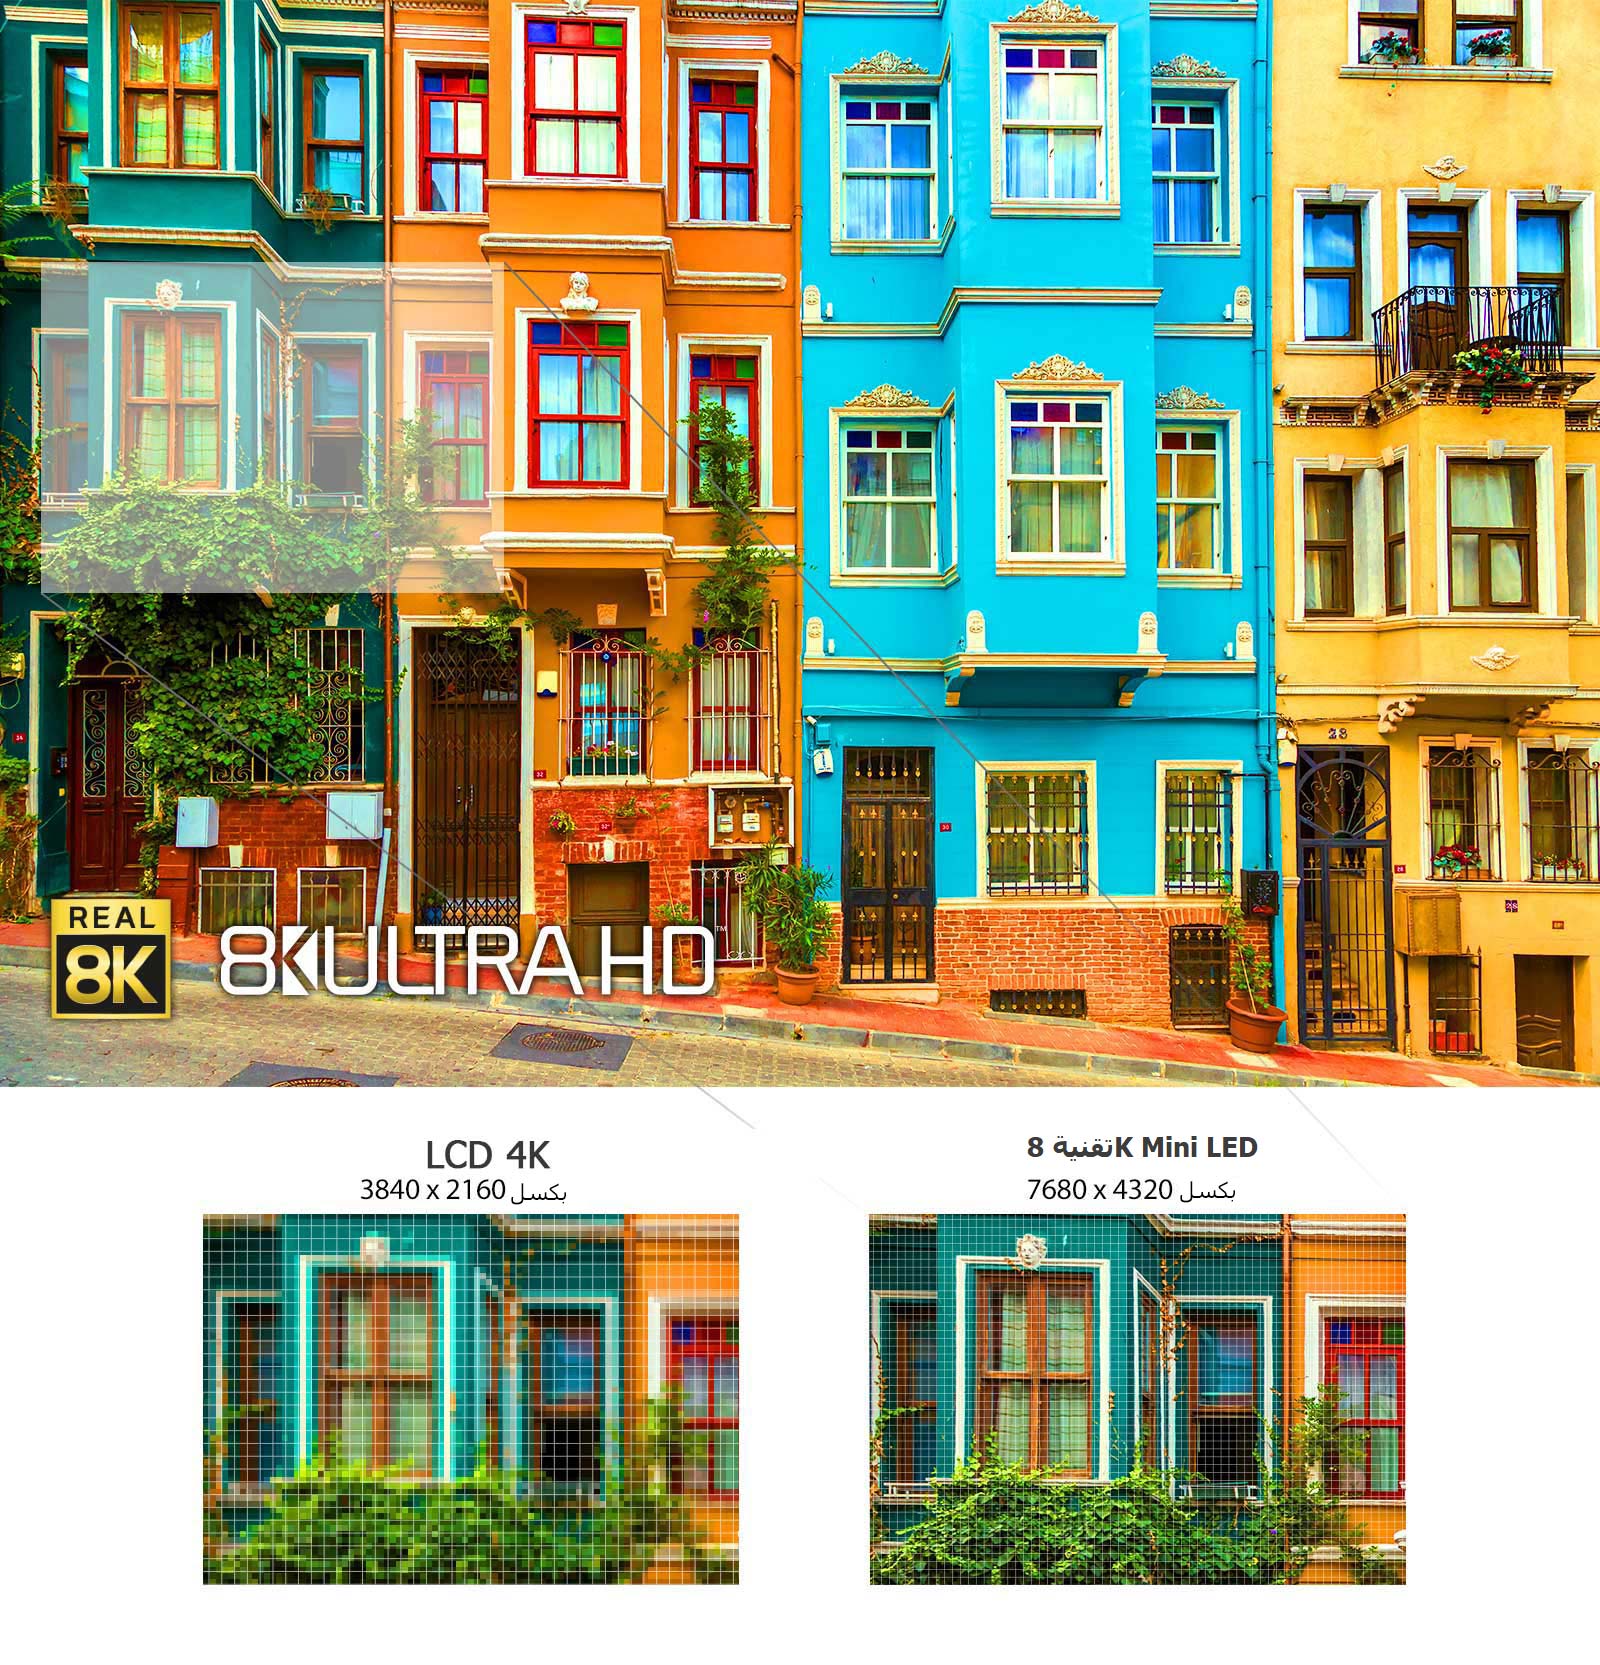 صورة لمجموعة من منازل المدينة متعددة الطوابق ذات الألوان الزاهية. توجد أدناه صورتان صغيرتان لإحدى النوافذ تظهران الفارق في الدقة بين تلفزيونات 4K LCD و8K Mini LED.